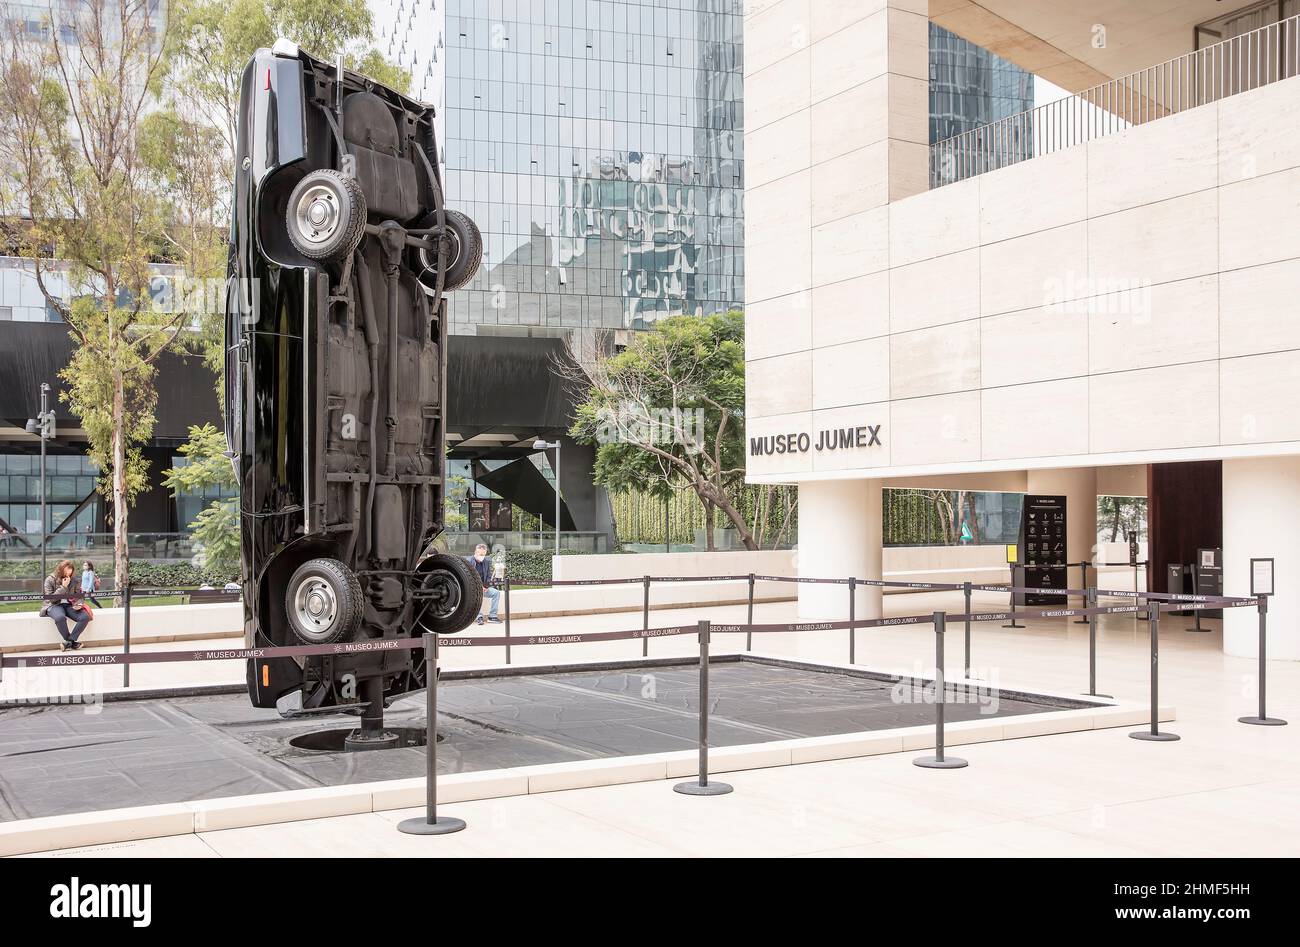 Exposición de automóviles al aire libre en el Museo Jumex de Arte Contemporáneo, Polanco, Ciudad de Mexixo, México Foto de stock